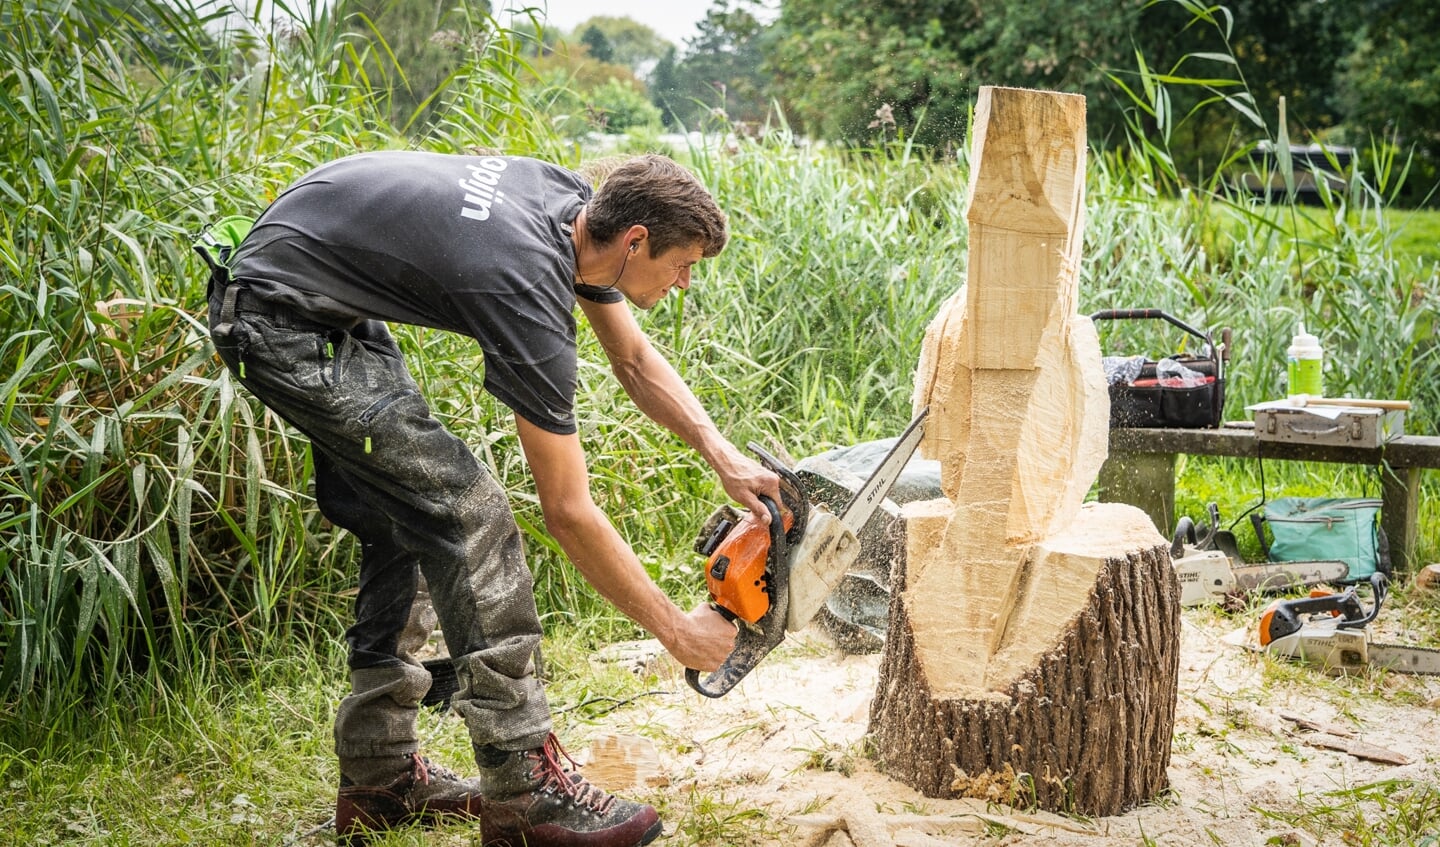 Bij de Heemtuin was een woodcarver aan het werk, die sculpturen uit boomstronken maakt met behulp van een kettingzaag.